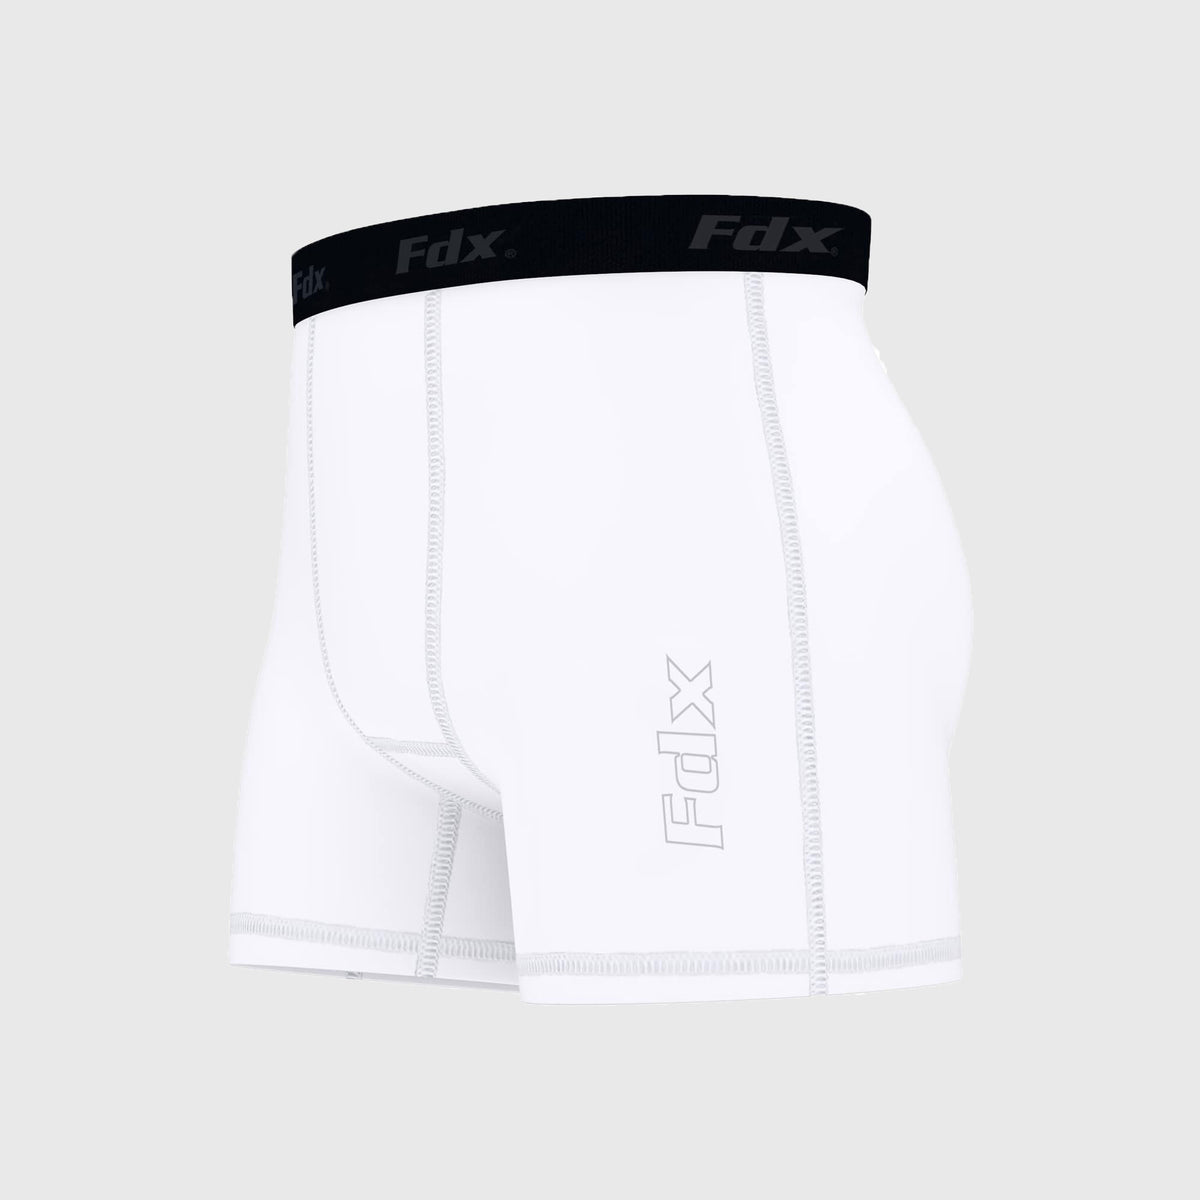 Fdx A5 White Men's & Boy's Boxer Shorts